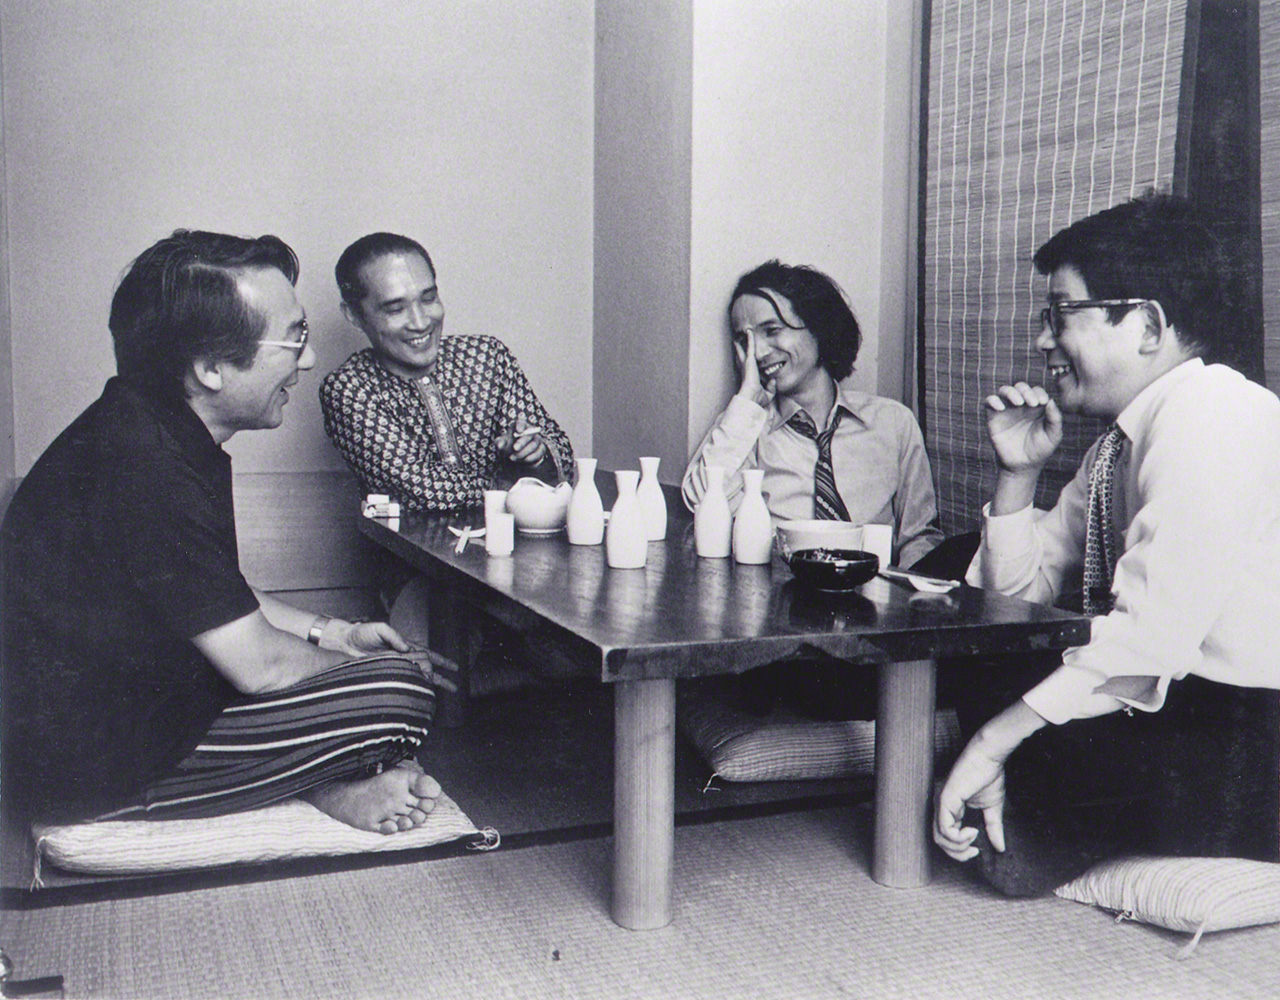 الاستمتاع وقضاء الوقت مع الأصدقاء في السبعينيات. من اليسار: الملحن ياسو جوجي، الشاعرتانيكاوا شونتارو، تاكيميتسو، والمؤلف أويه كينزابرو